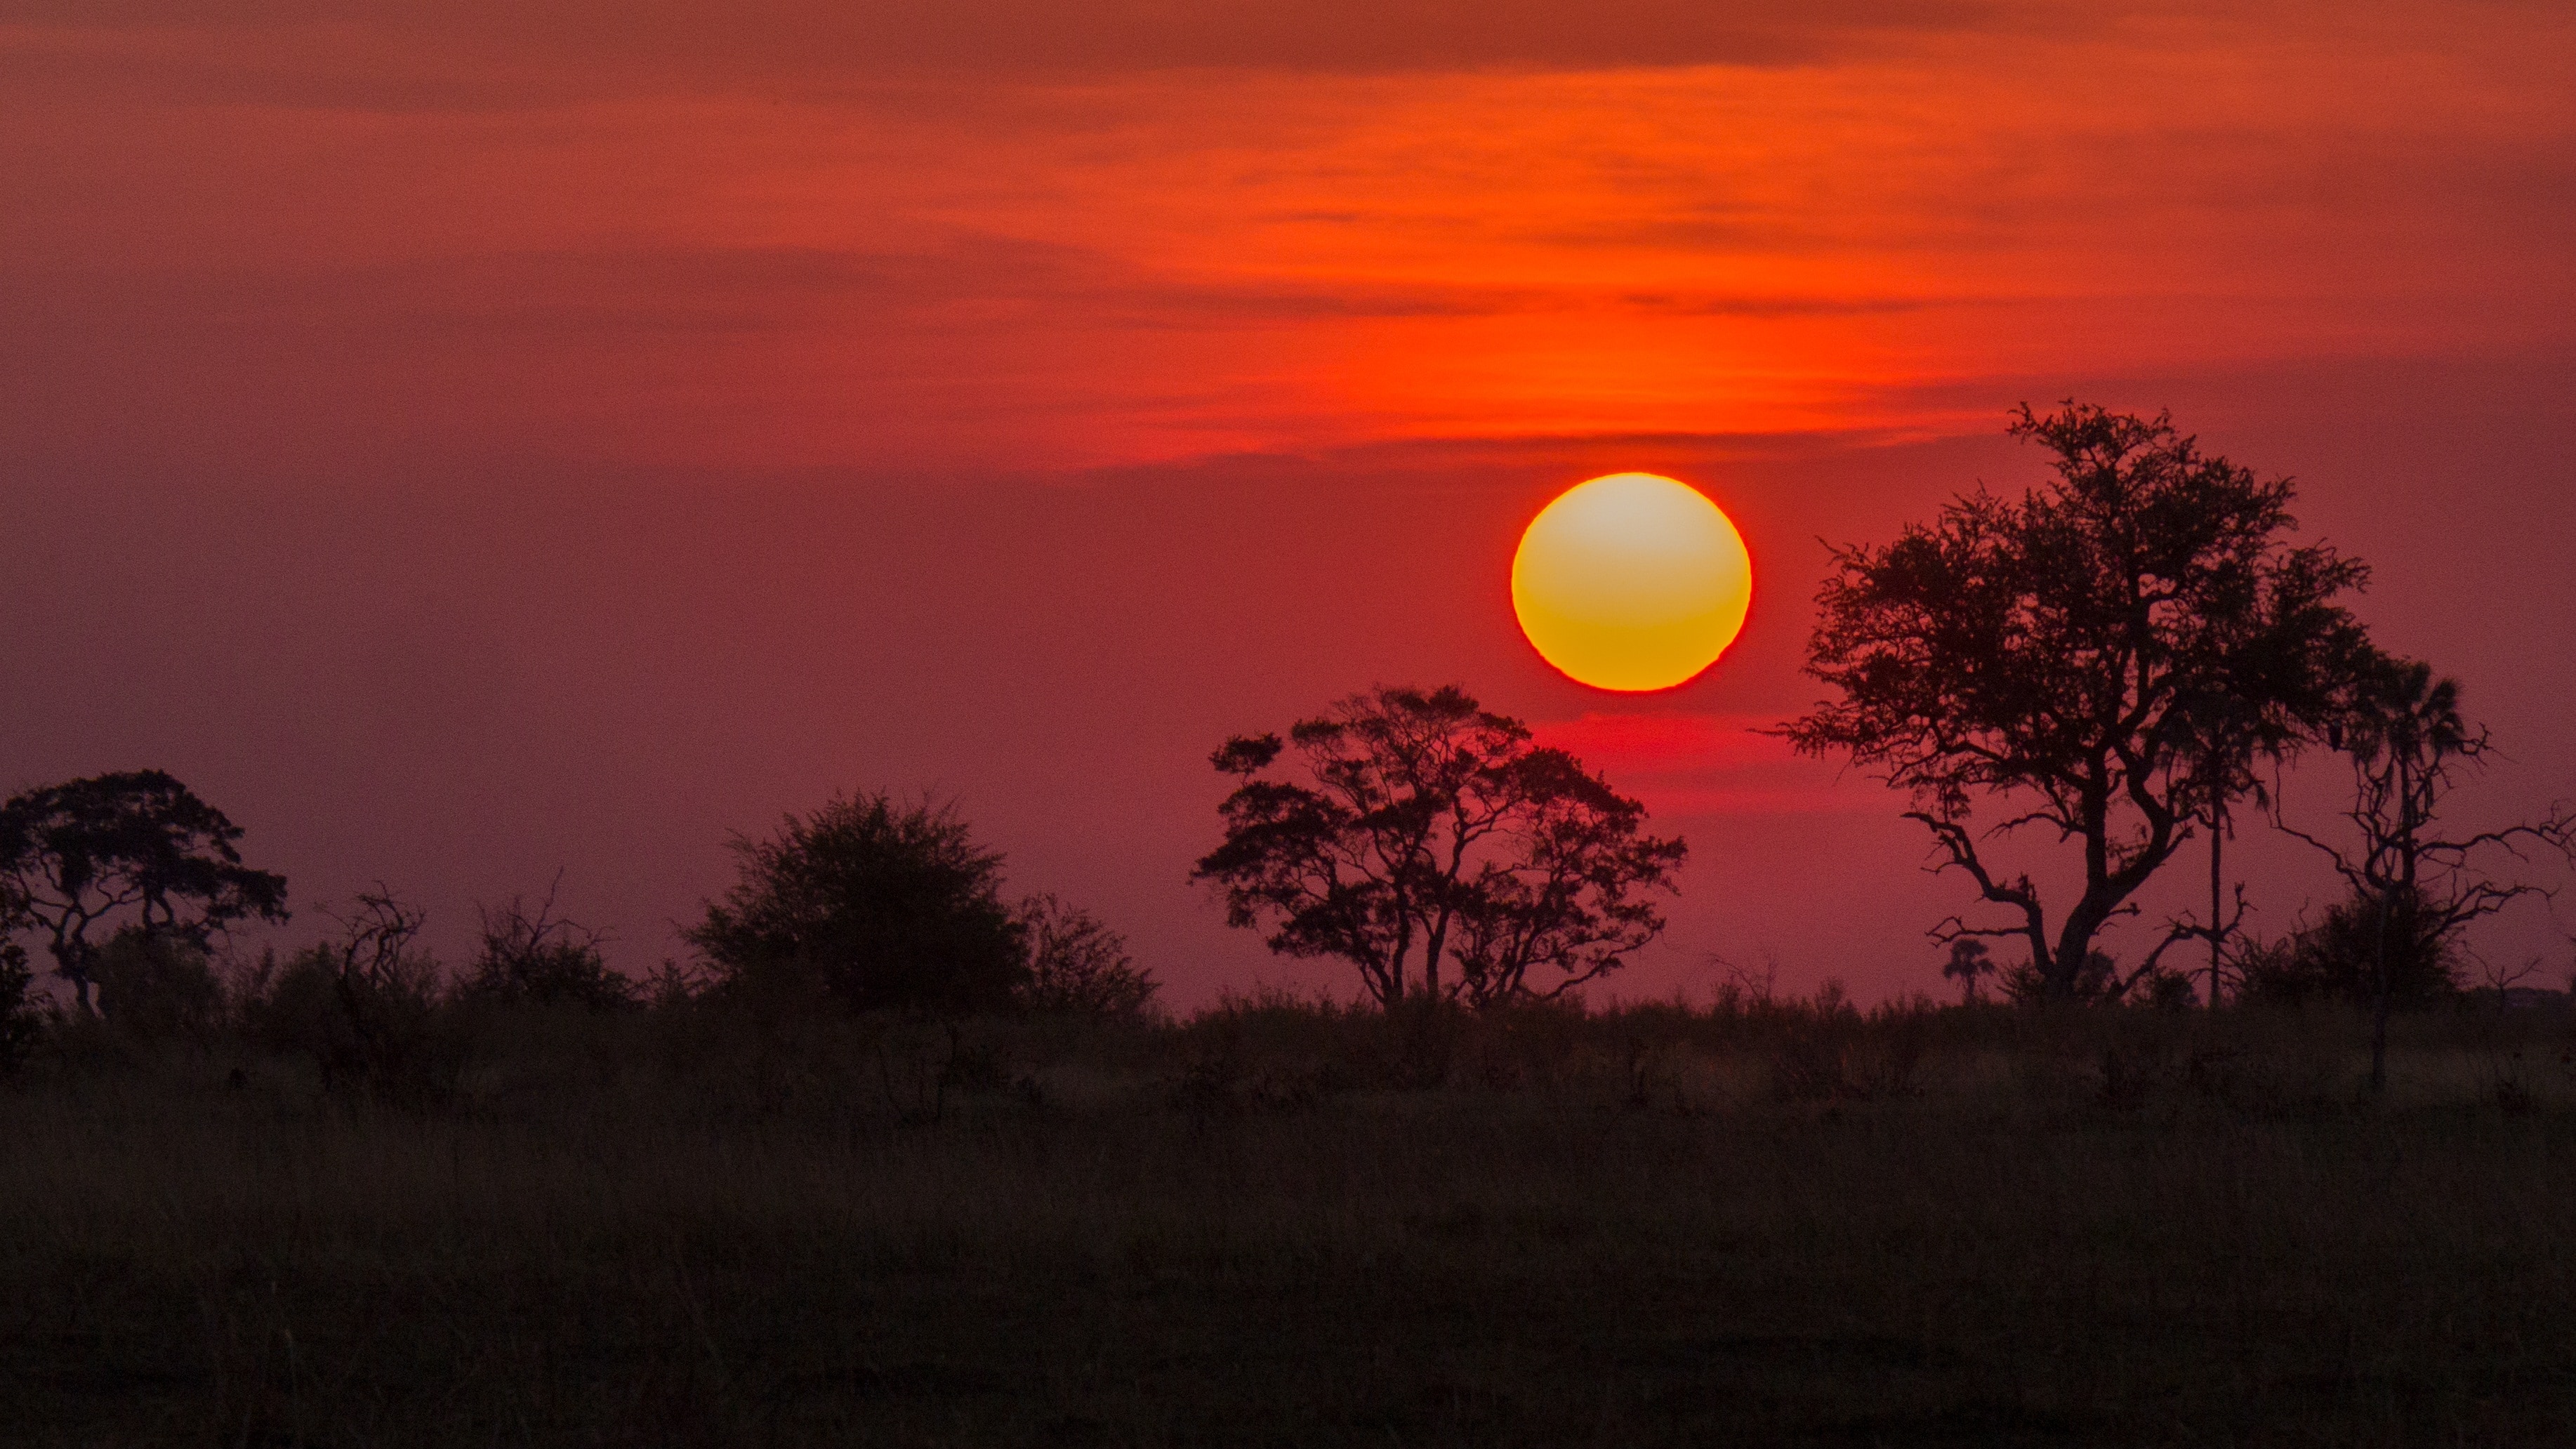 safaris sunset photograph